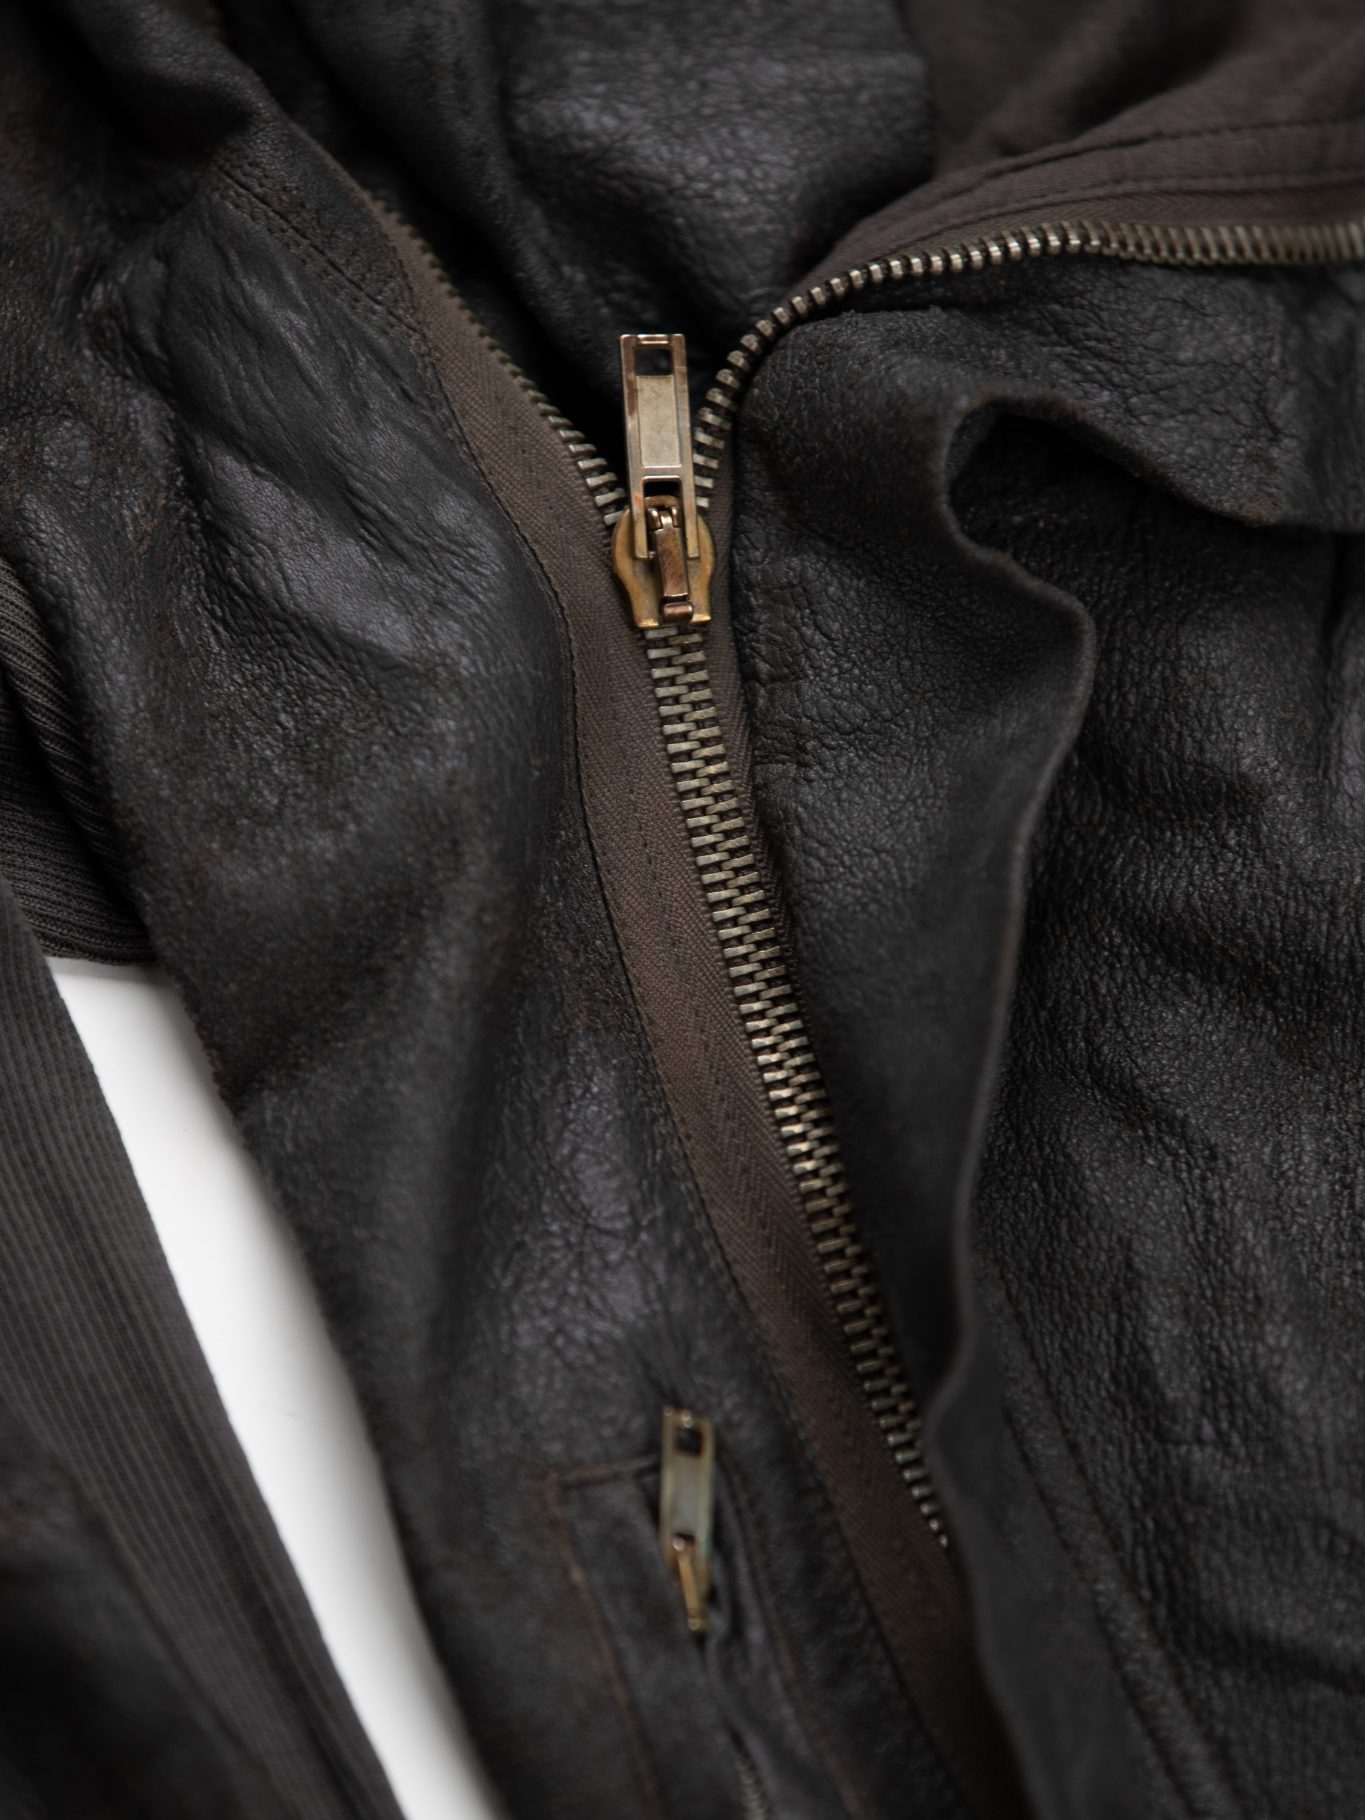 Lamb Leather Jacket